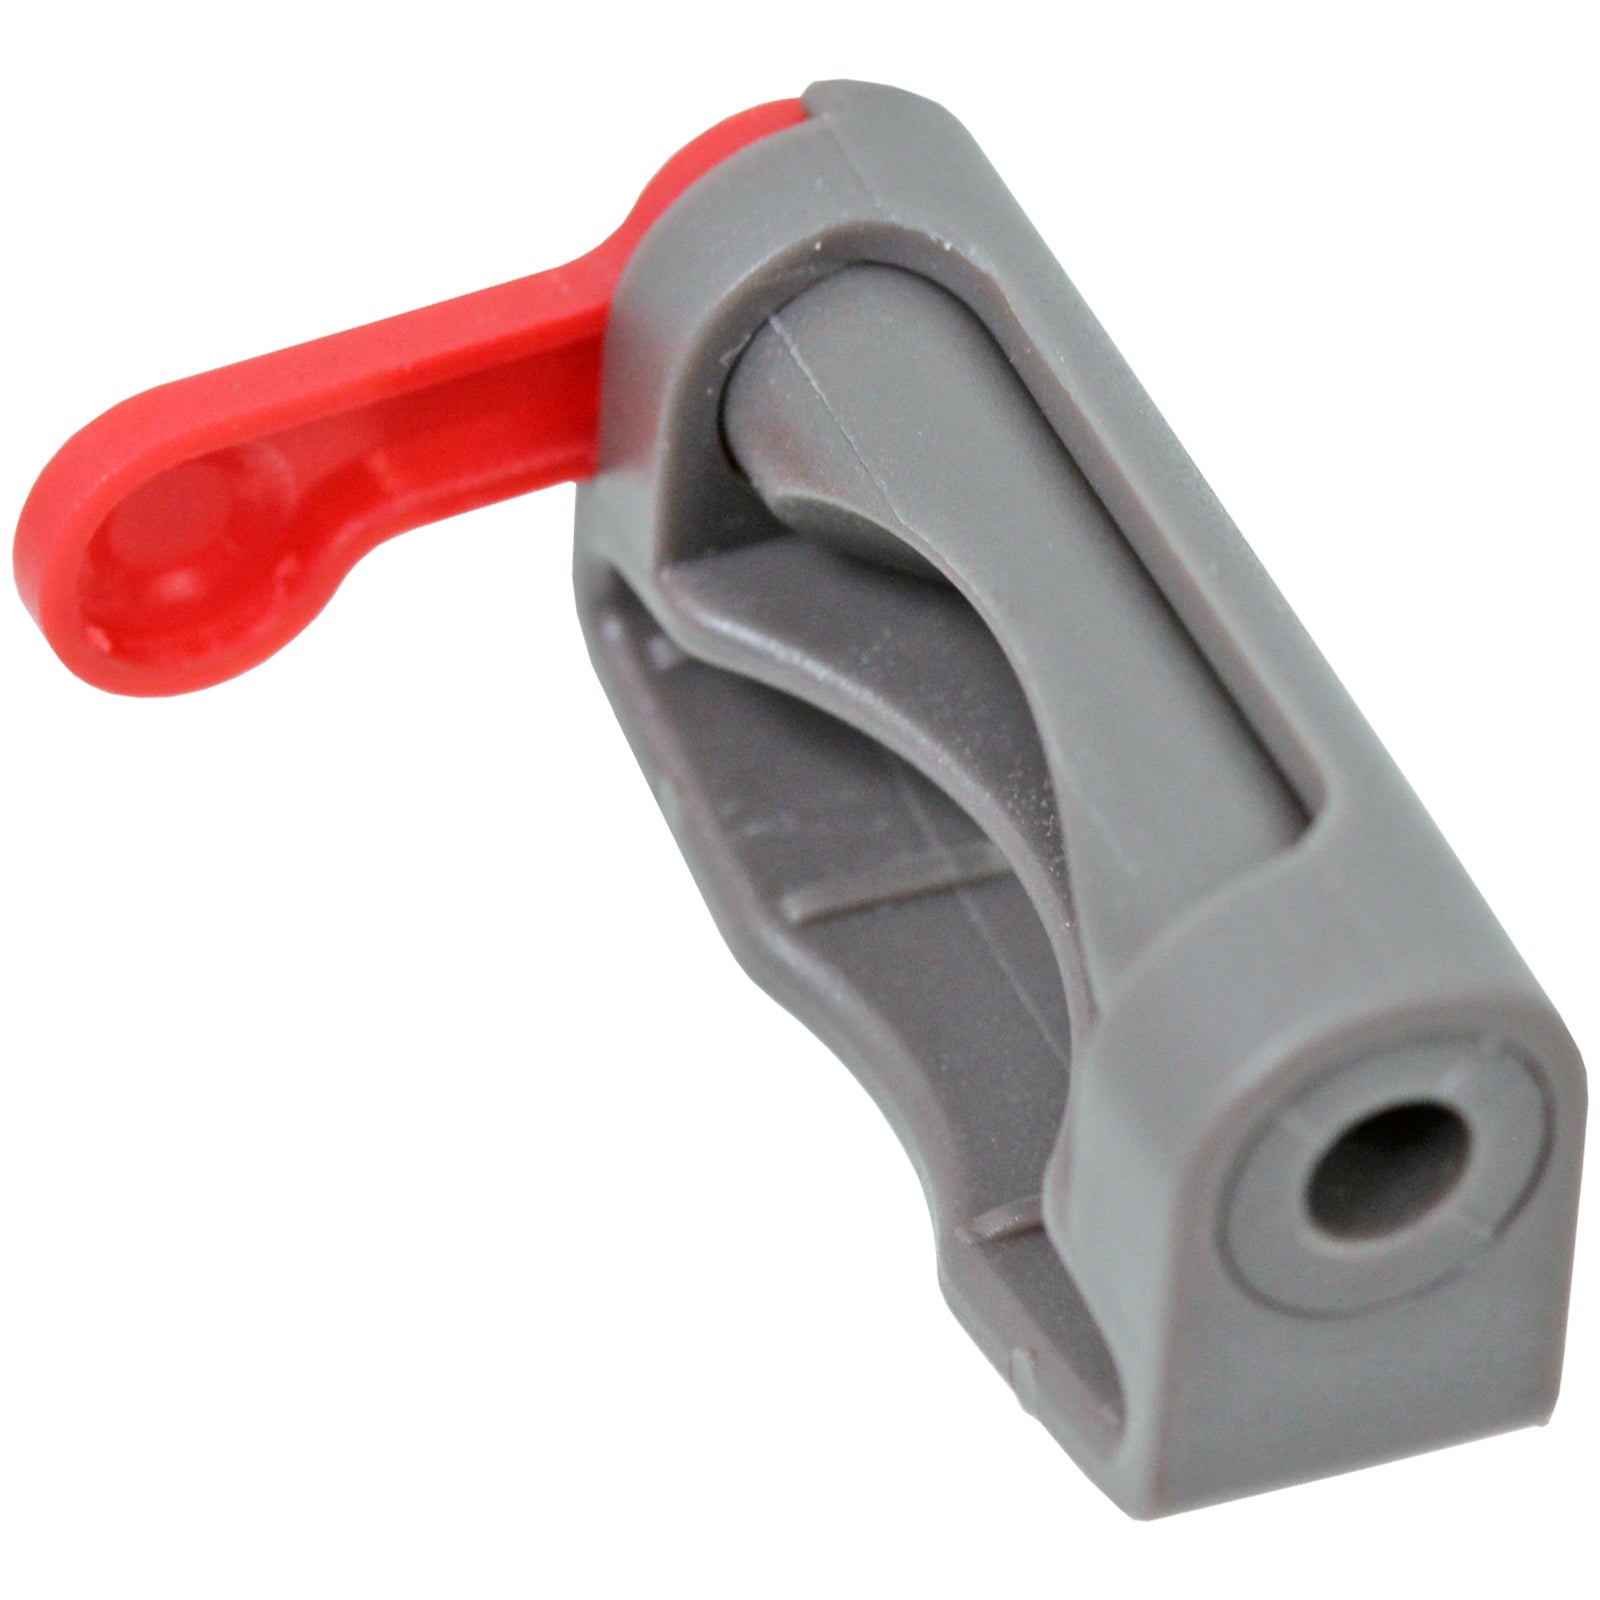 Trigger Lock for DYSON V7 SV11 Vacuum Cleaner Cordless Power Holder Button